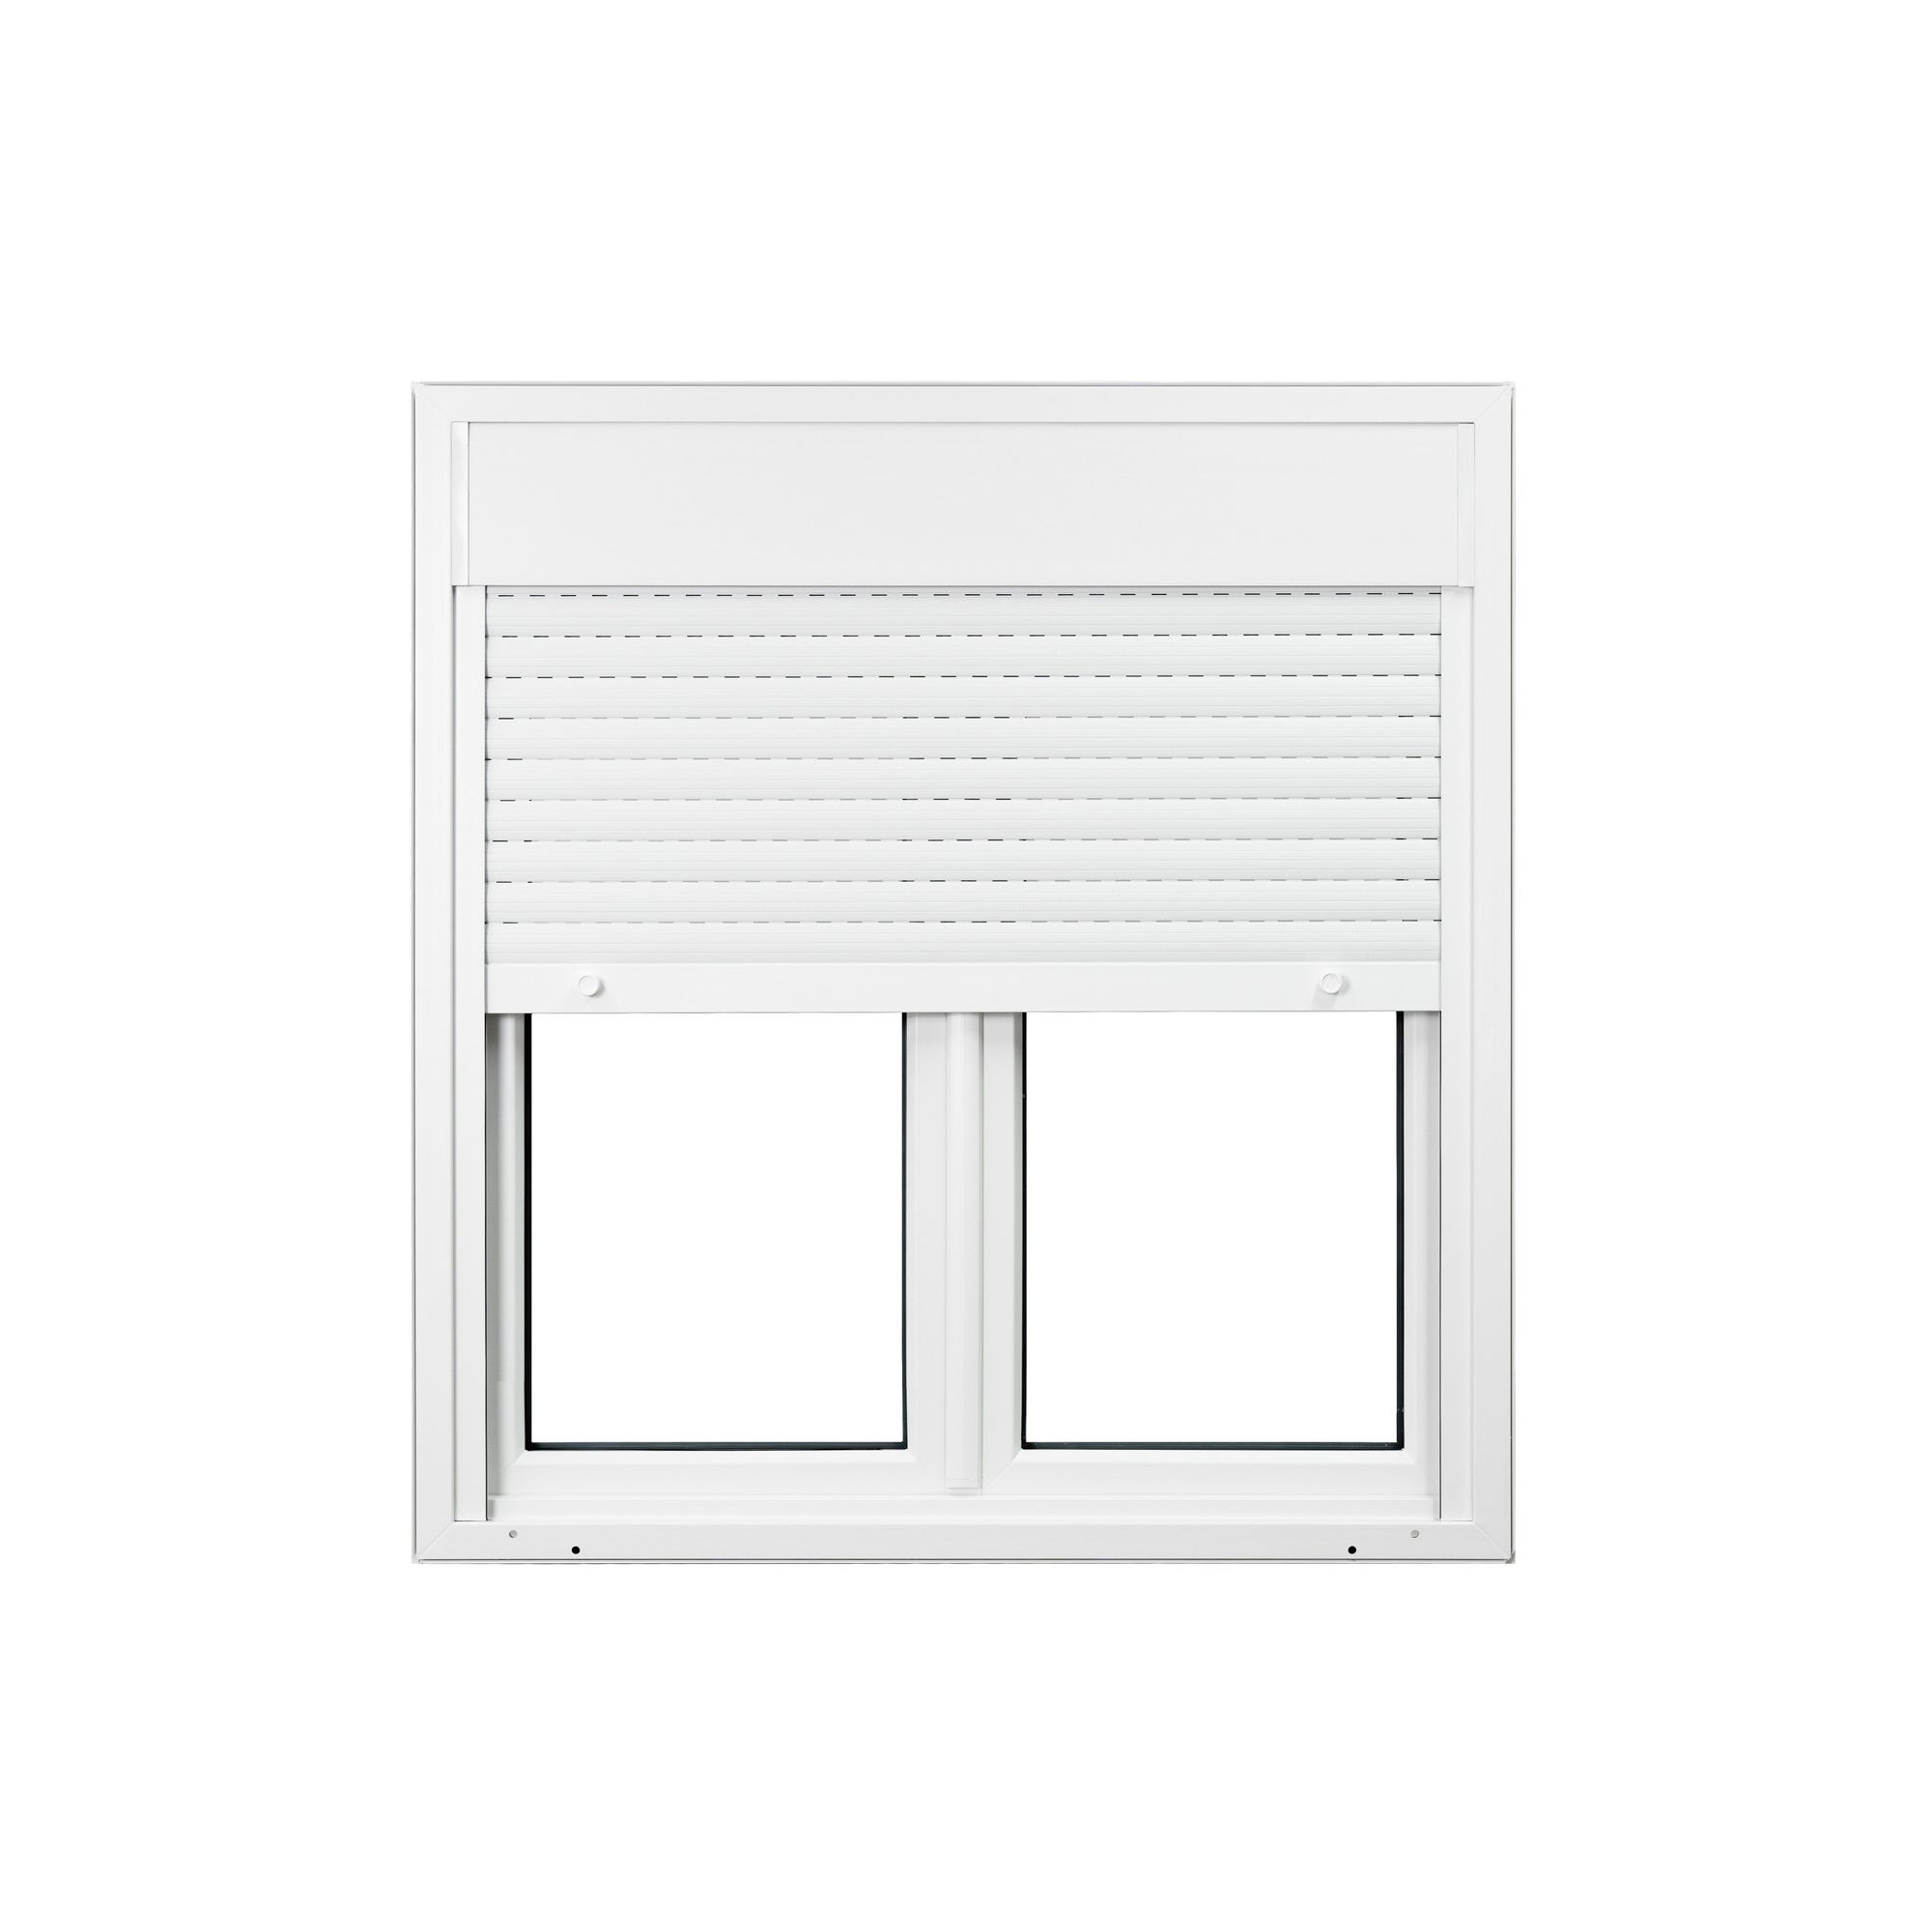 Fenêtre PVC avec volet roulant intégré monobloc Ob 2 vantaux H.75 x L.120 cm - GROSFILLEX 2